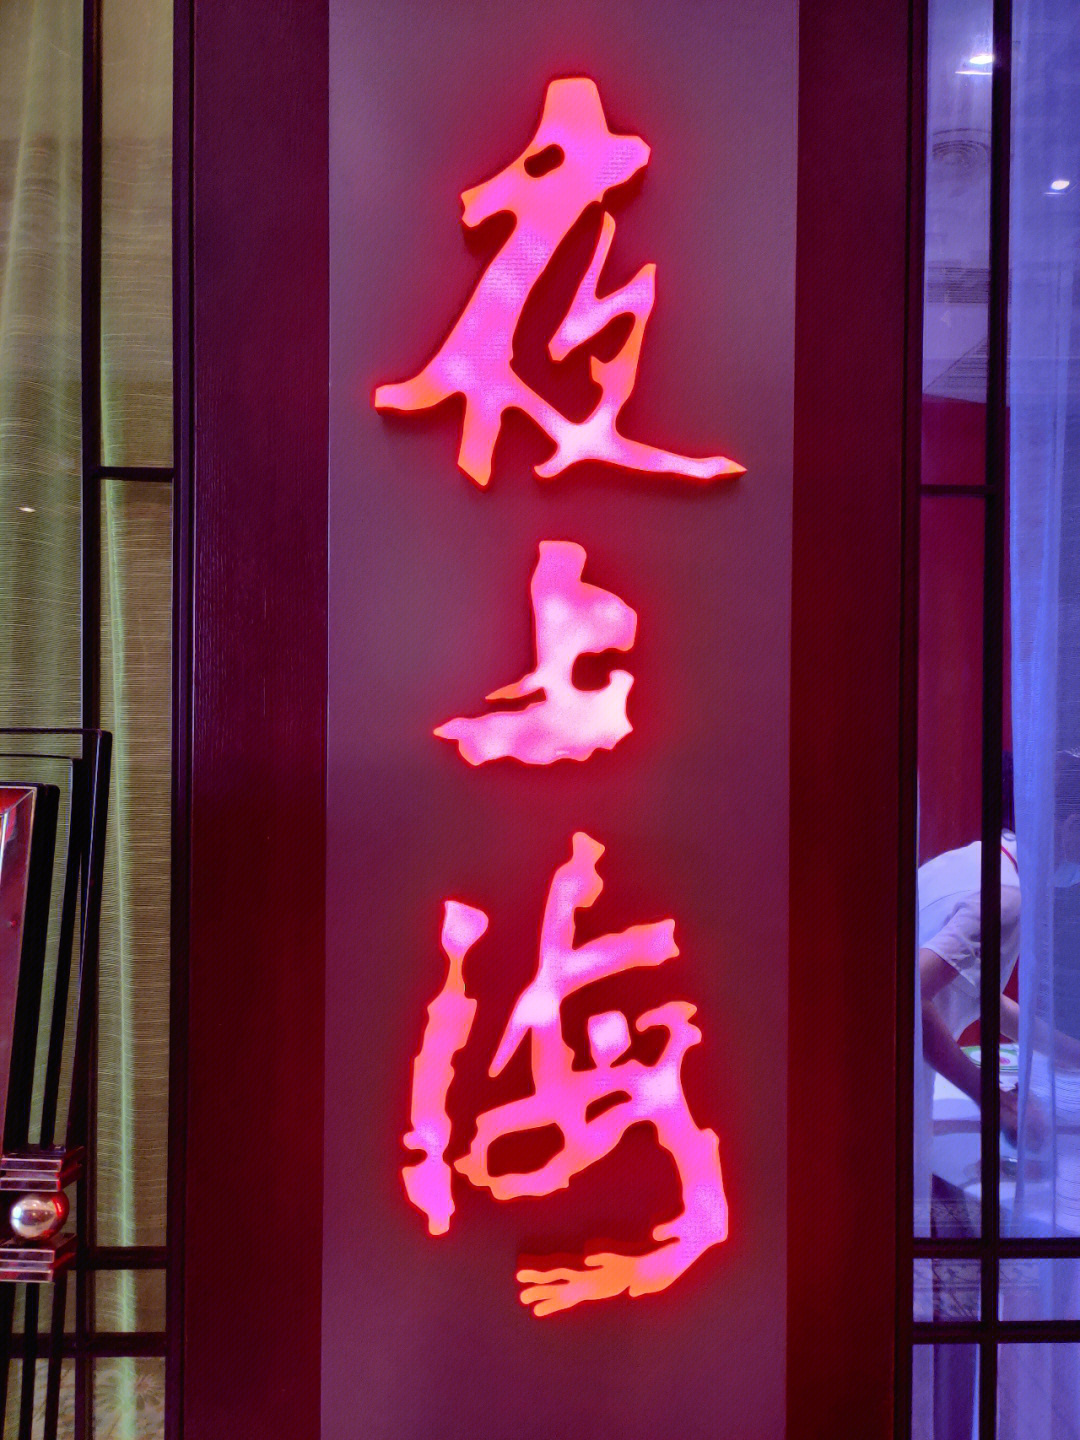 之前都在吃红杏酒家,今天来夜上海尝试一番,有惊喜 明档点菜